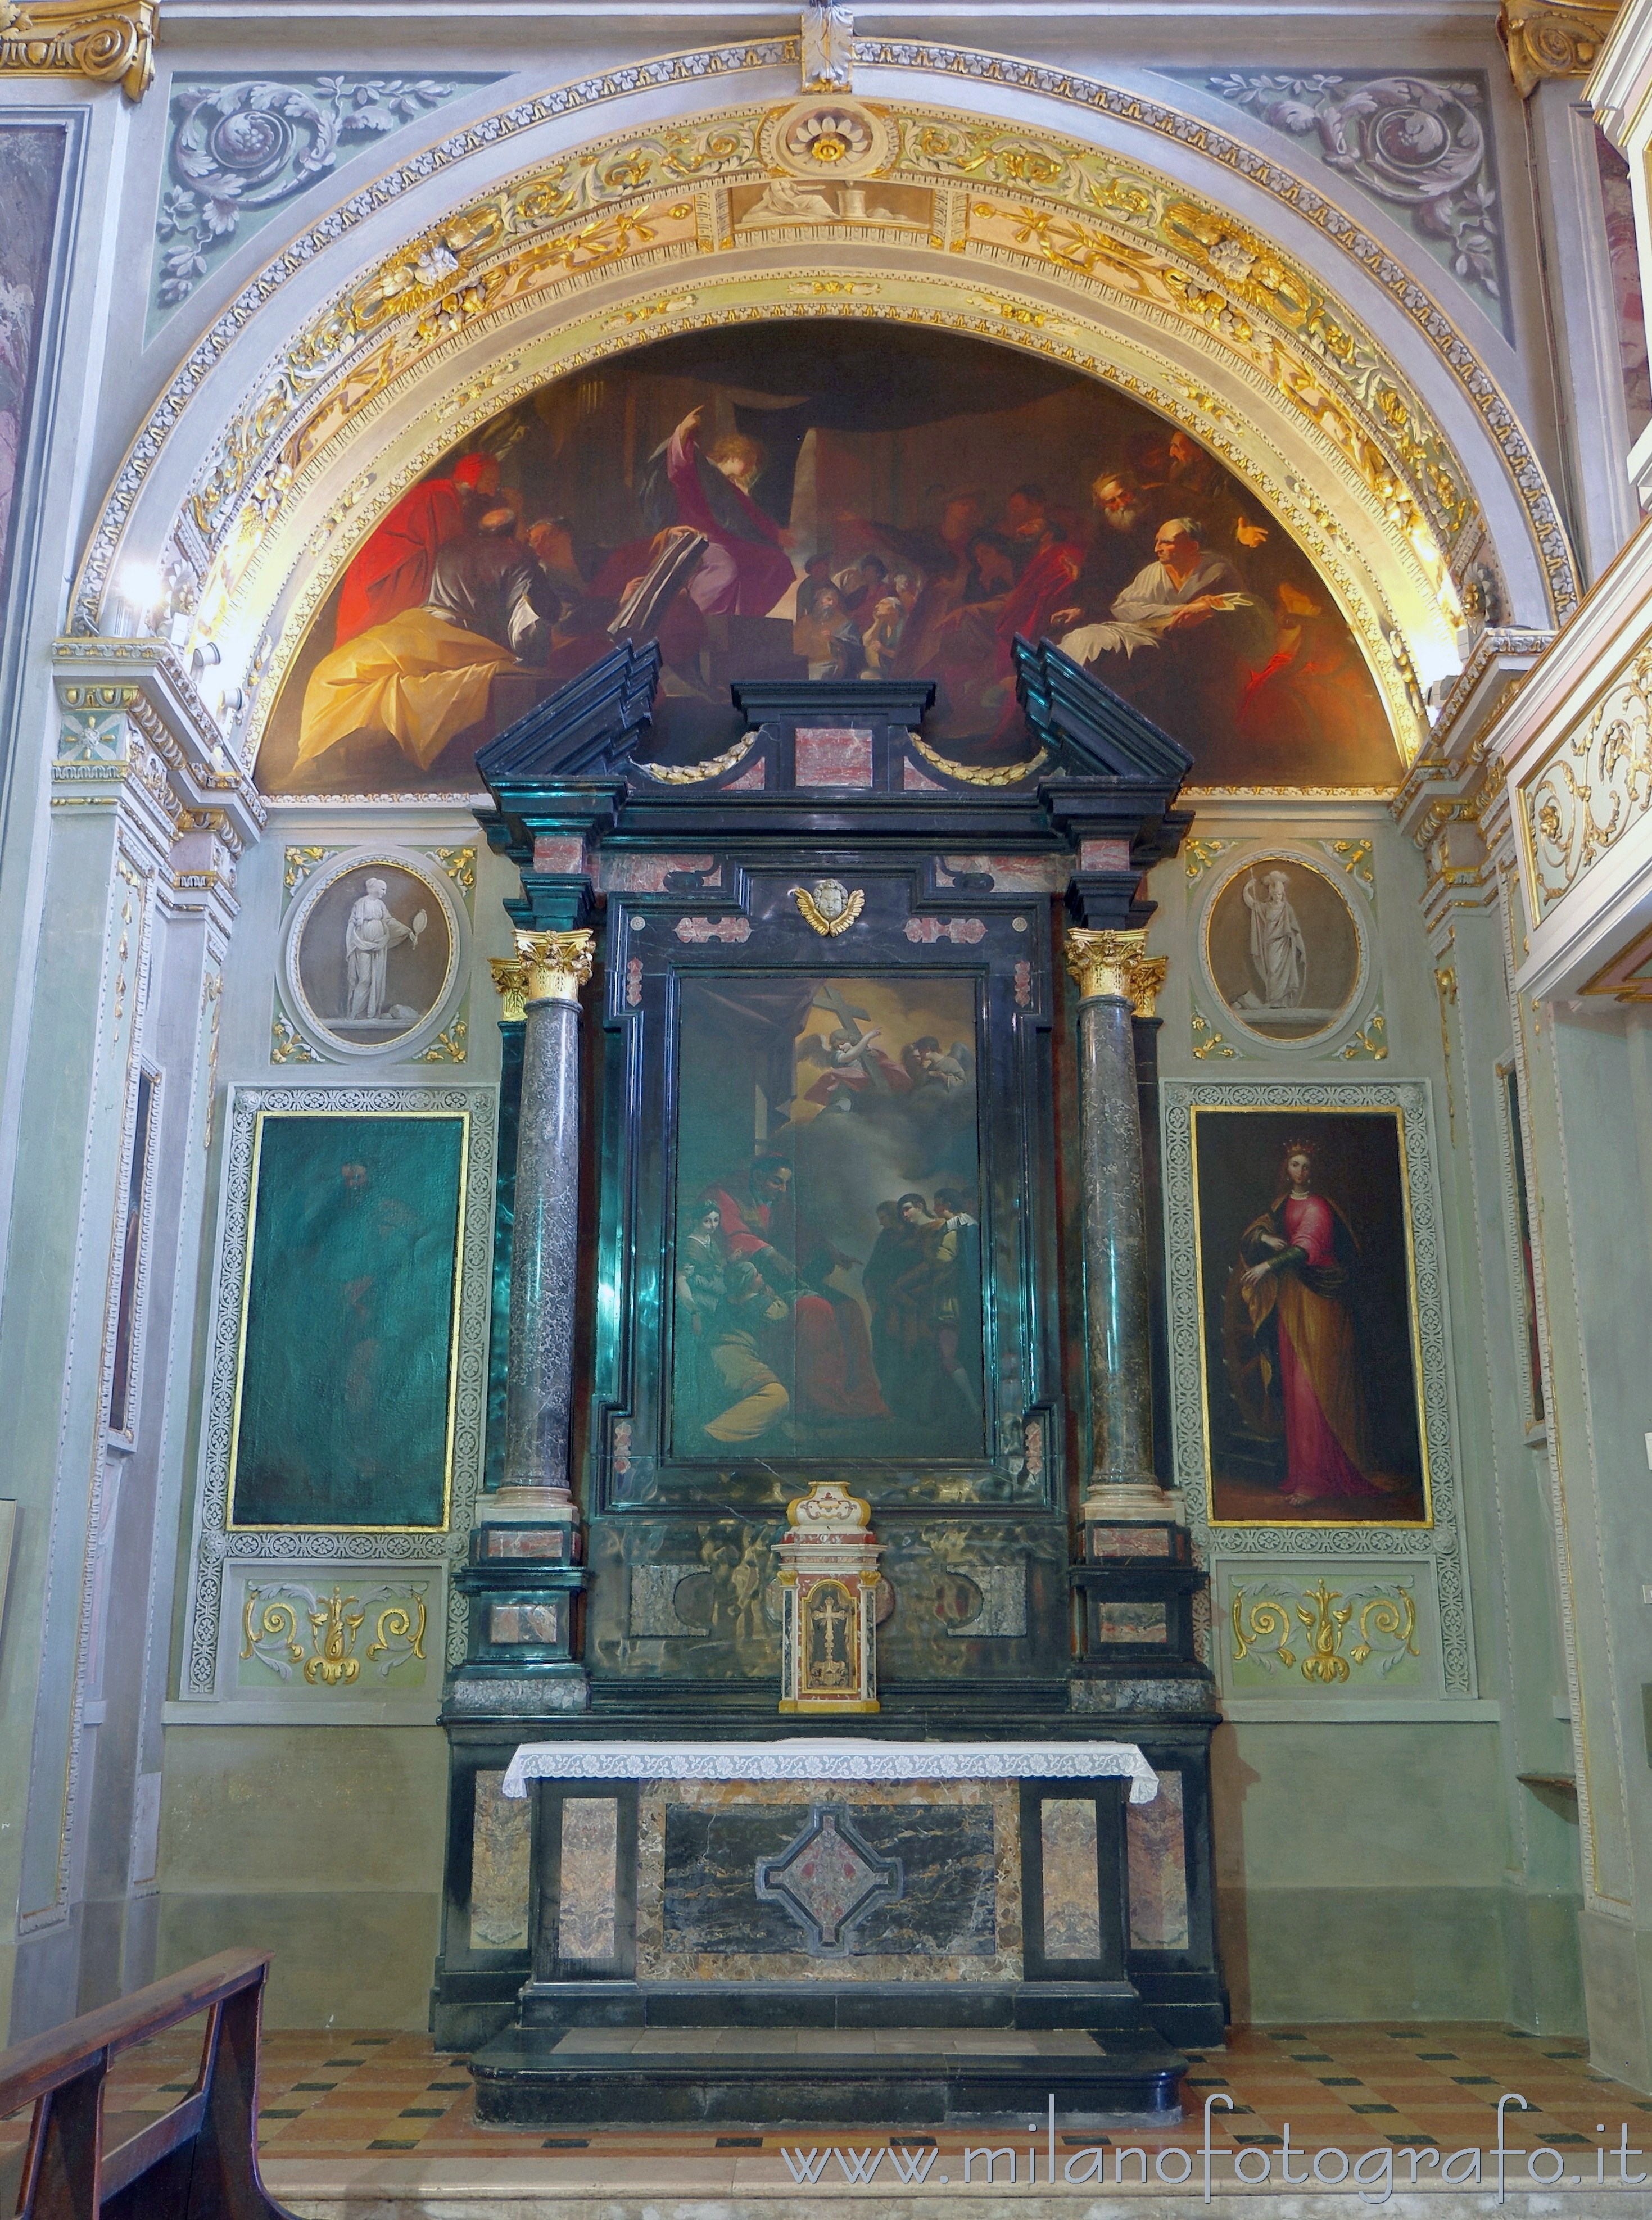 Romano di Lombardia (Bergamo): Altare della Dottrina Cristiana nella Basilica di San Defendente - Romano di Lombardia (Bergamo)